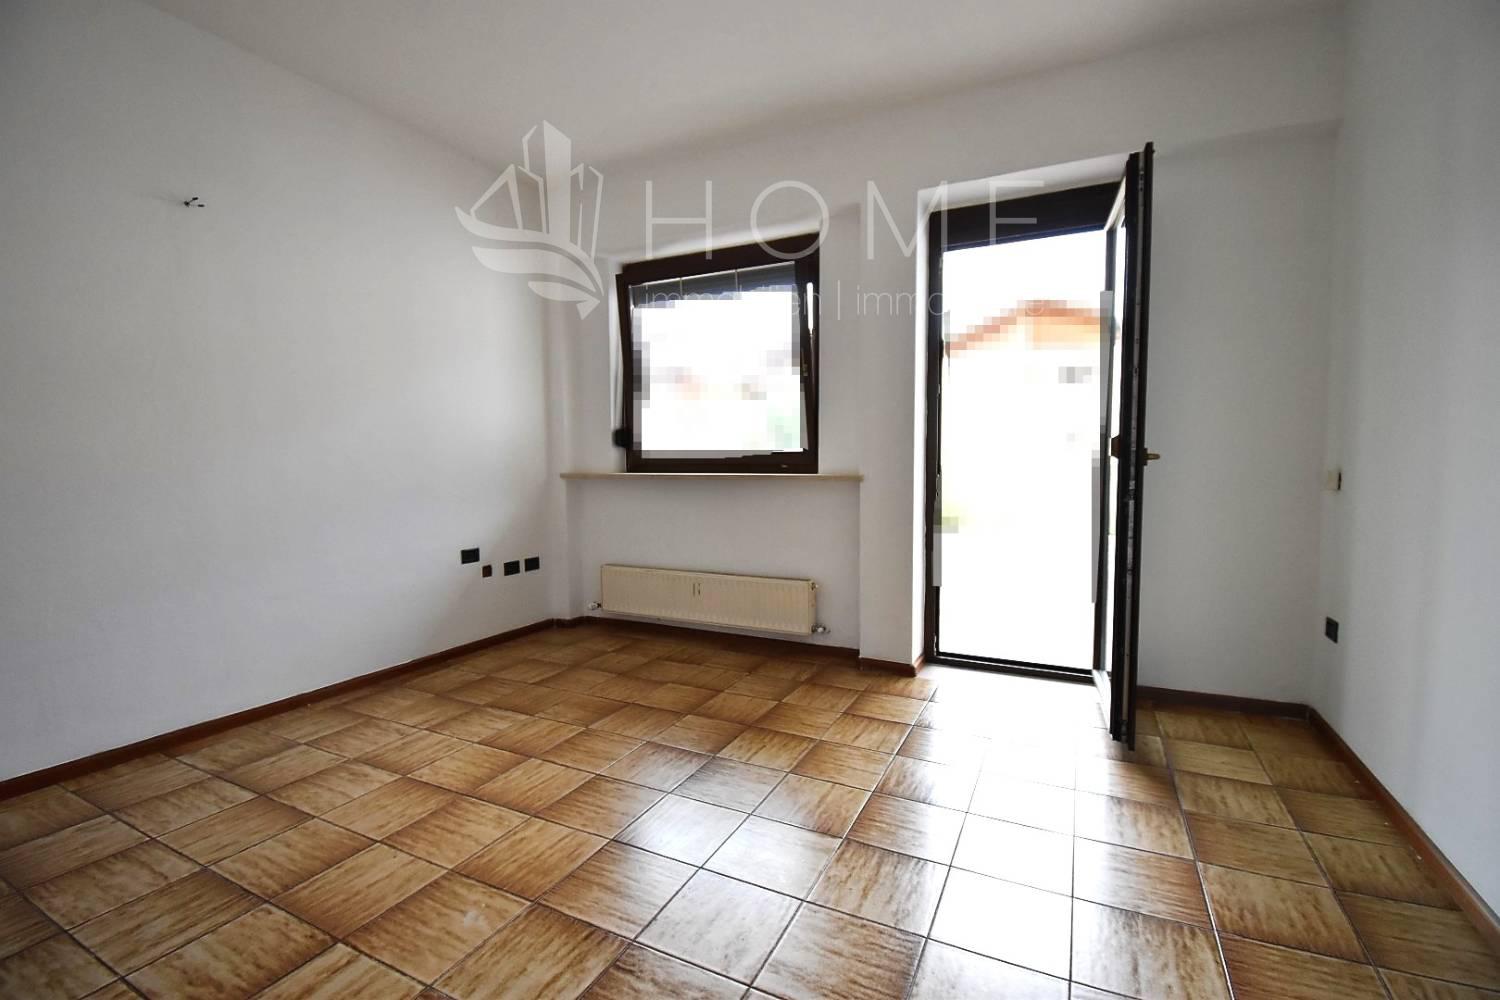 Appartamento in vendita a Egna, 2 locali, zona Zona: Laghetti, prezzo € 210.000 | CambioCasa.it